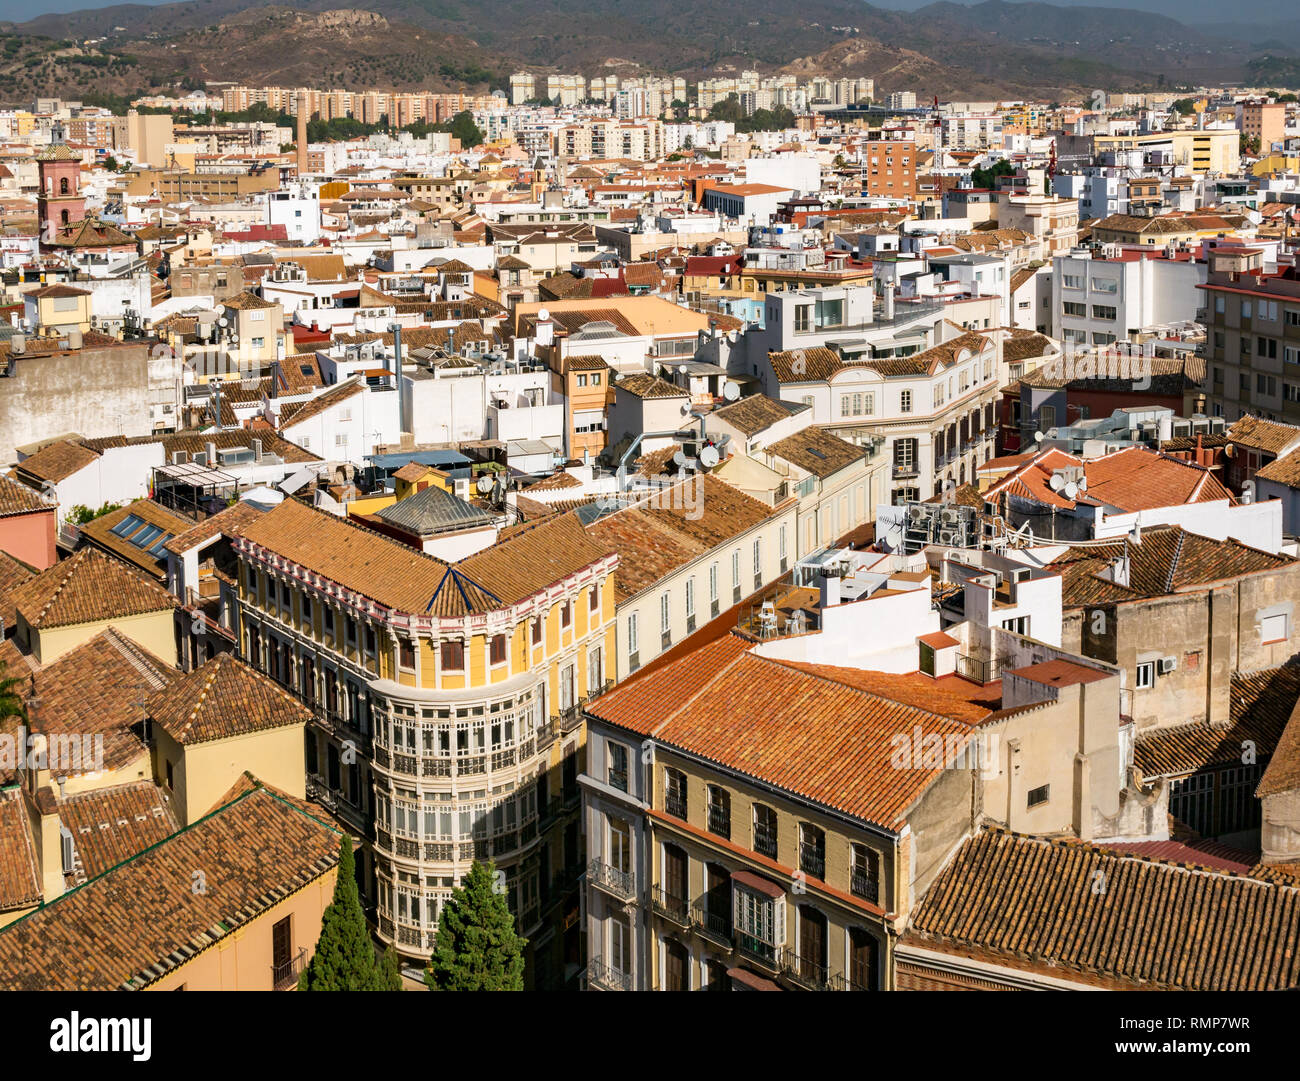 Vista desde arriba de las casas antiguas, en la esquina del edificio y calles estrechas, casco antiguo de Málaga, Andalucía, España Foto de stock